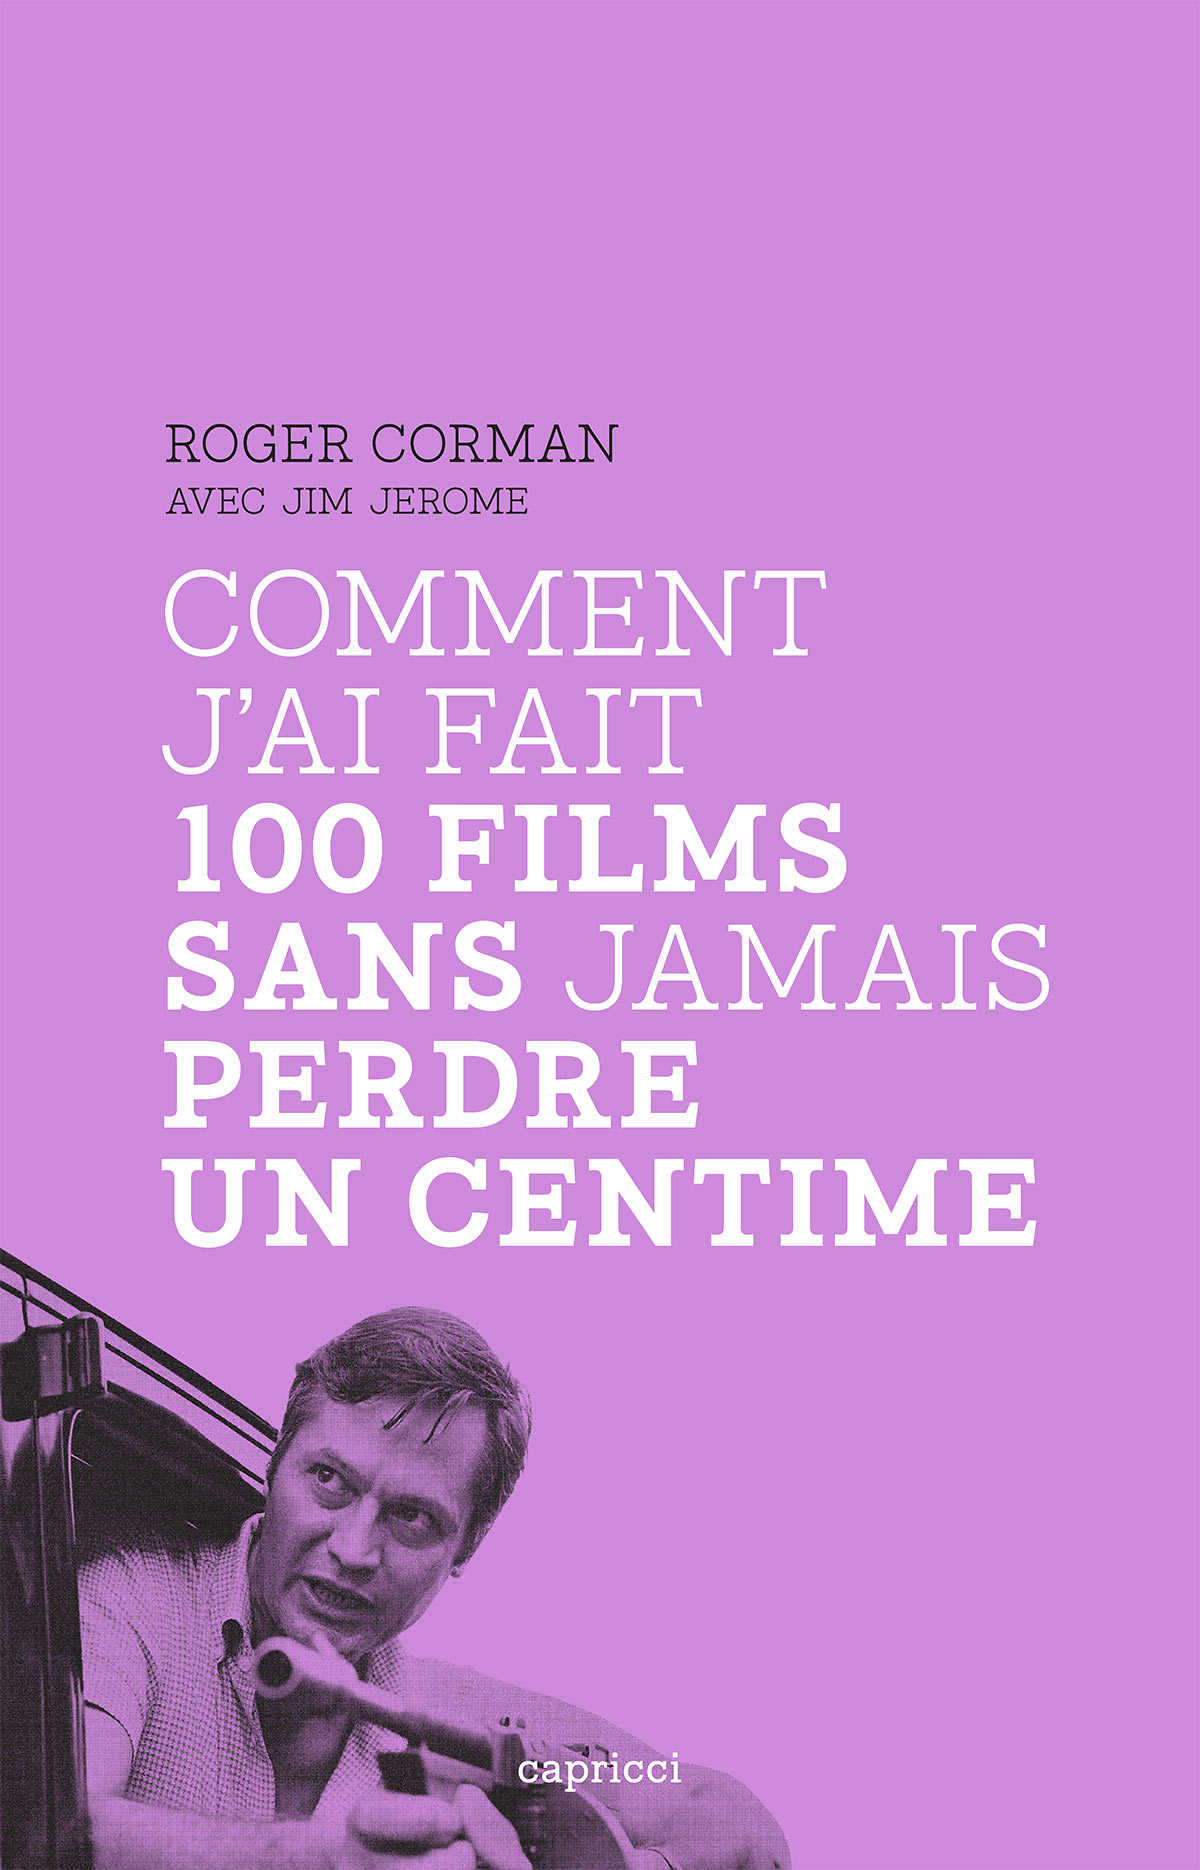 Roger Corman - Comment j'ai fait 100 films sans jamais perdre un centime